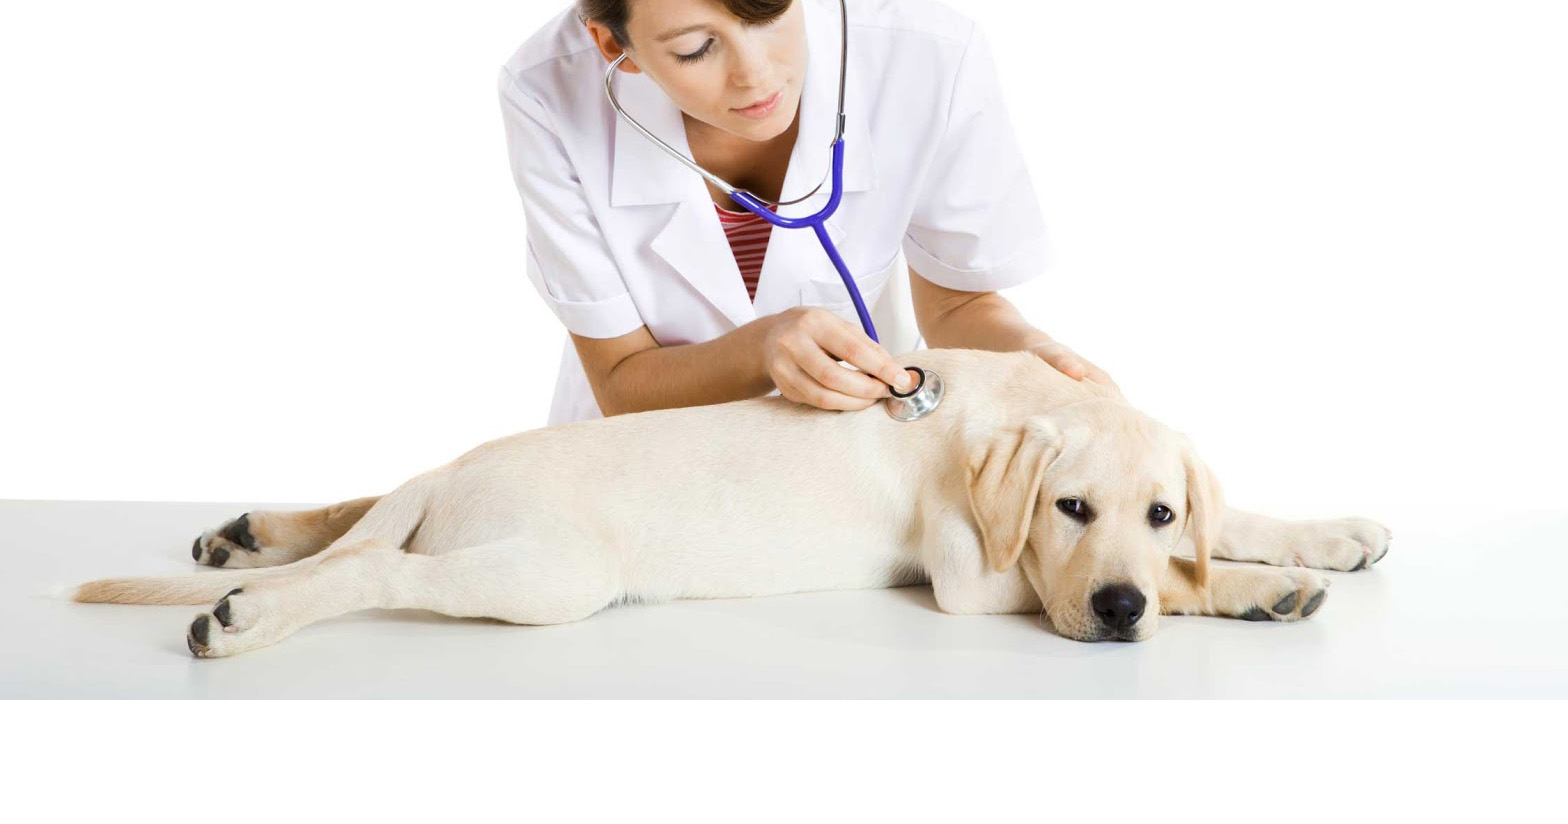 Tener conocimiento de como aplicarle los primeros auxilios a los perros podría ayudaros ante una emergencia